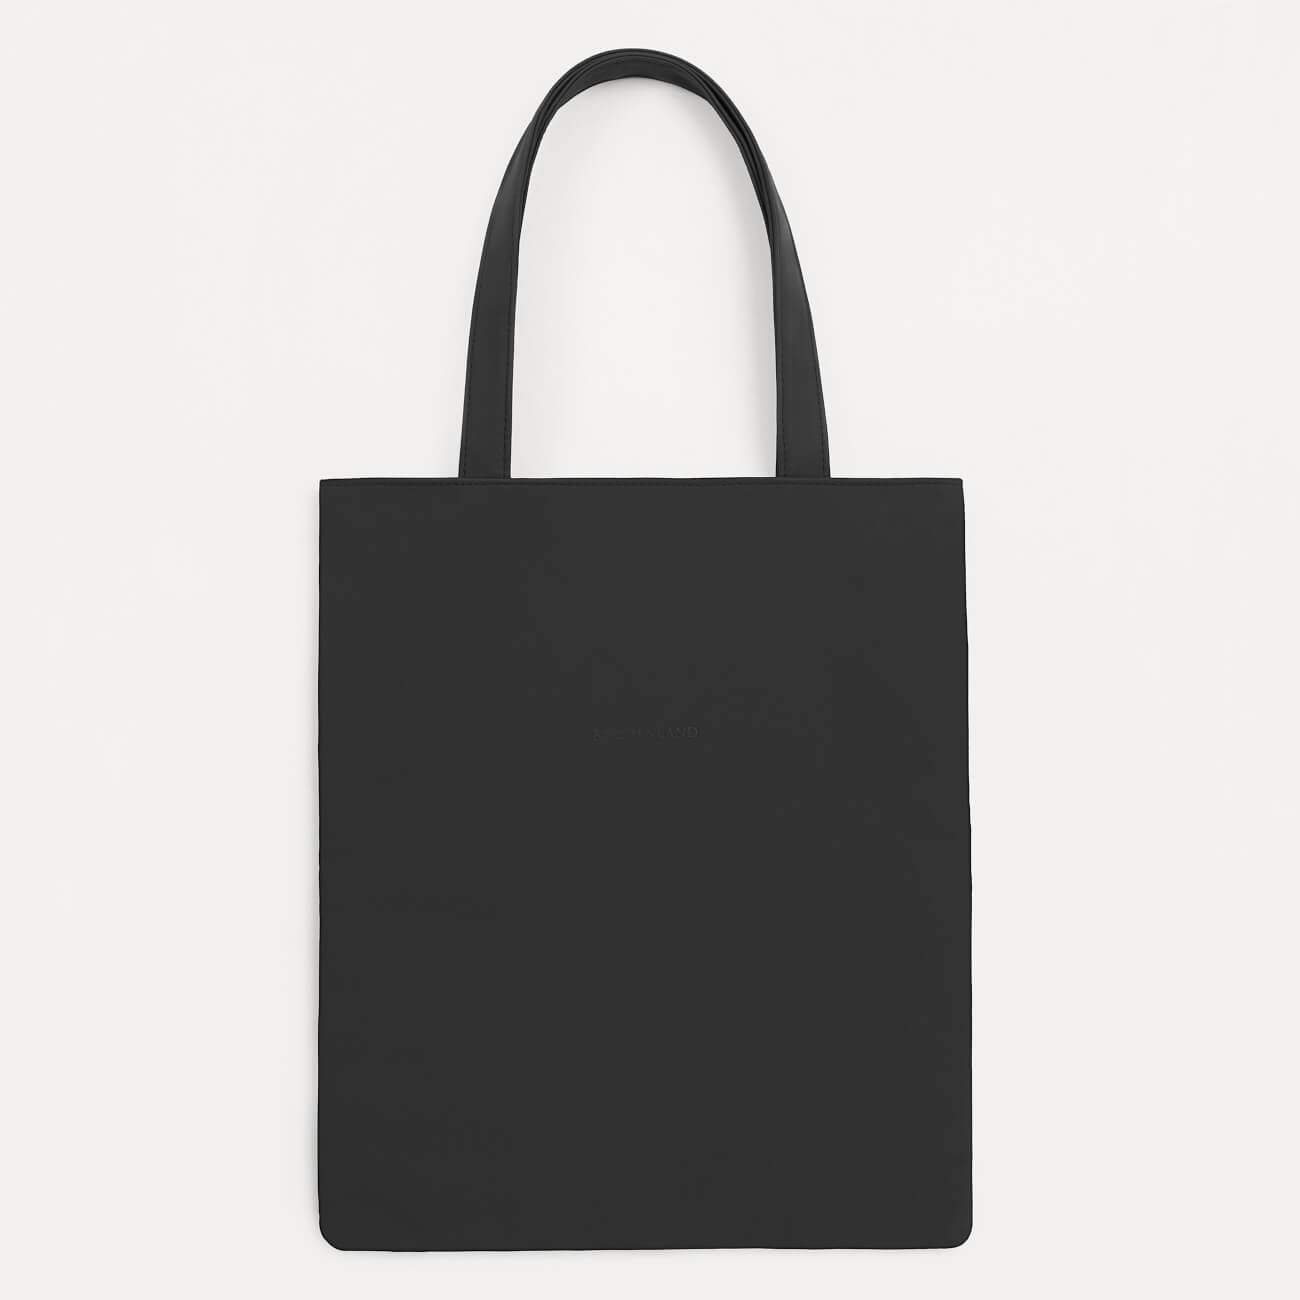 Сумка-шоппер, 37х32 см, полиуретан, черная, Krast сумка шоппер 37х32 см полиуретан черная krast